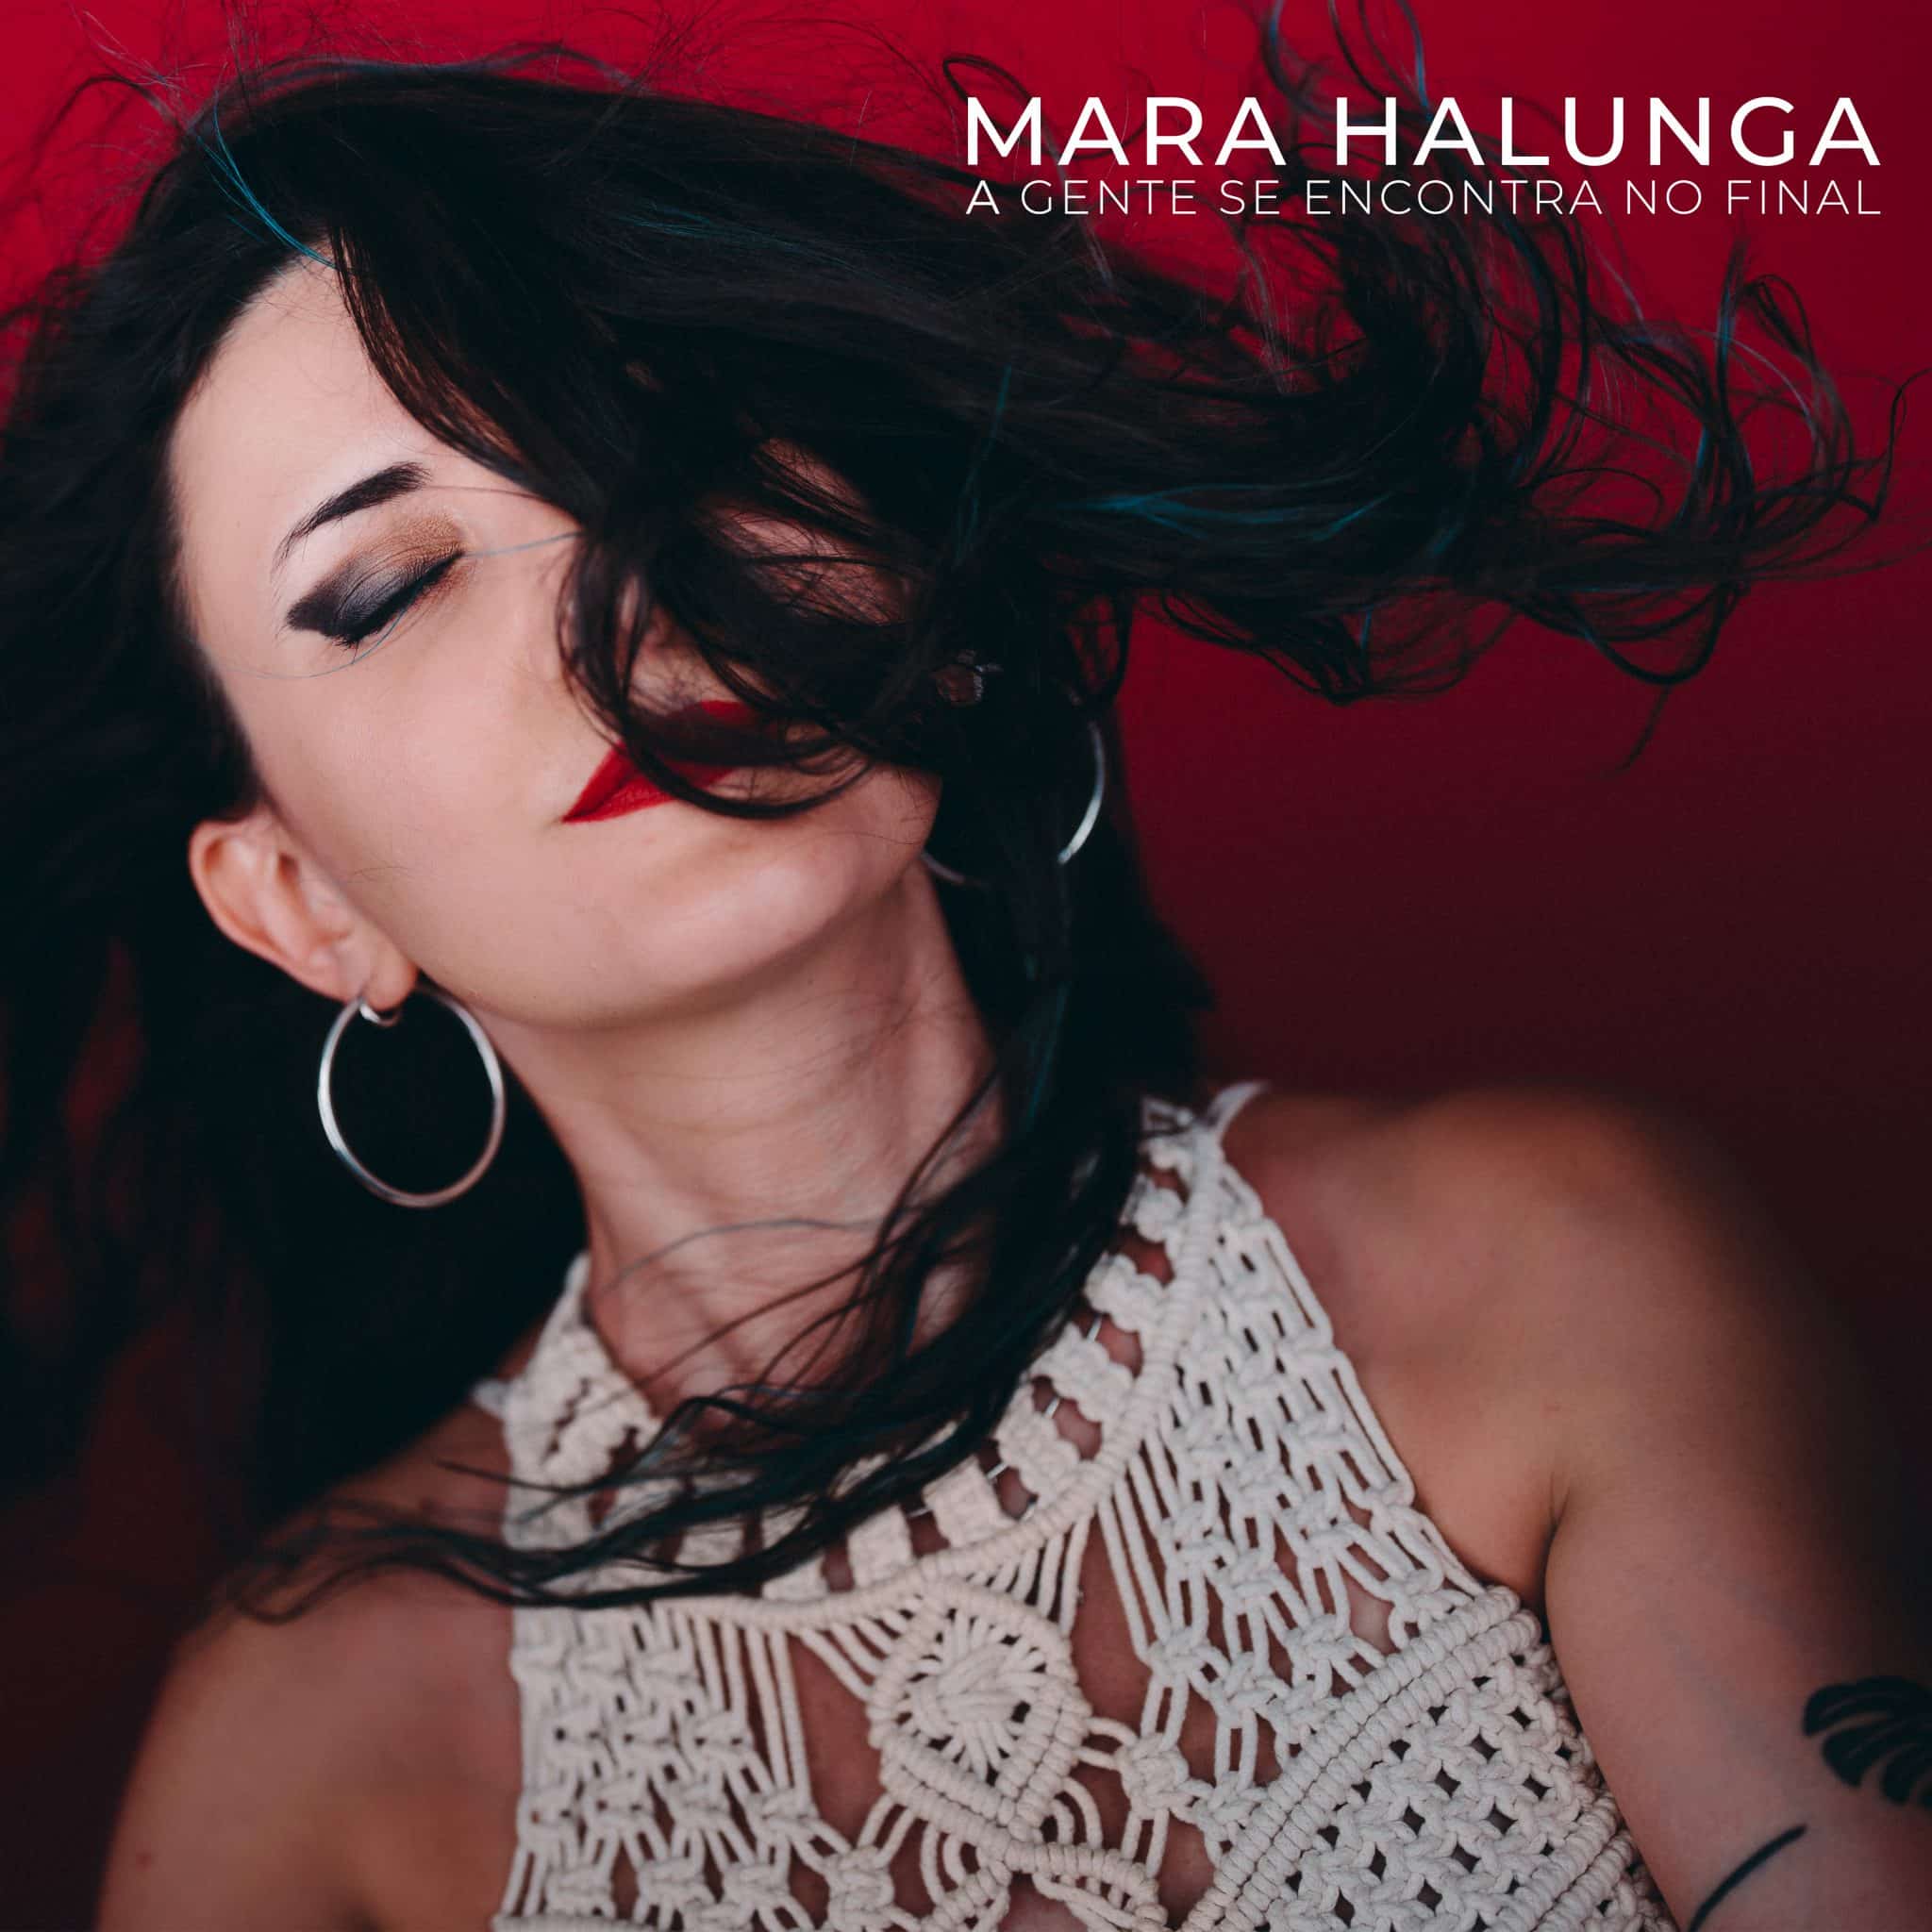 revistaprosaversoearte.com - 'A Gente se Encontra no Final', primeiro single da cantora e compositora romena Mara Halunga